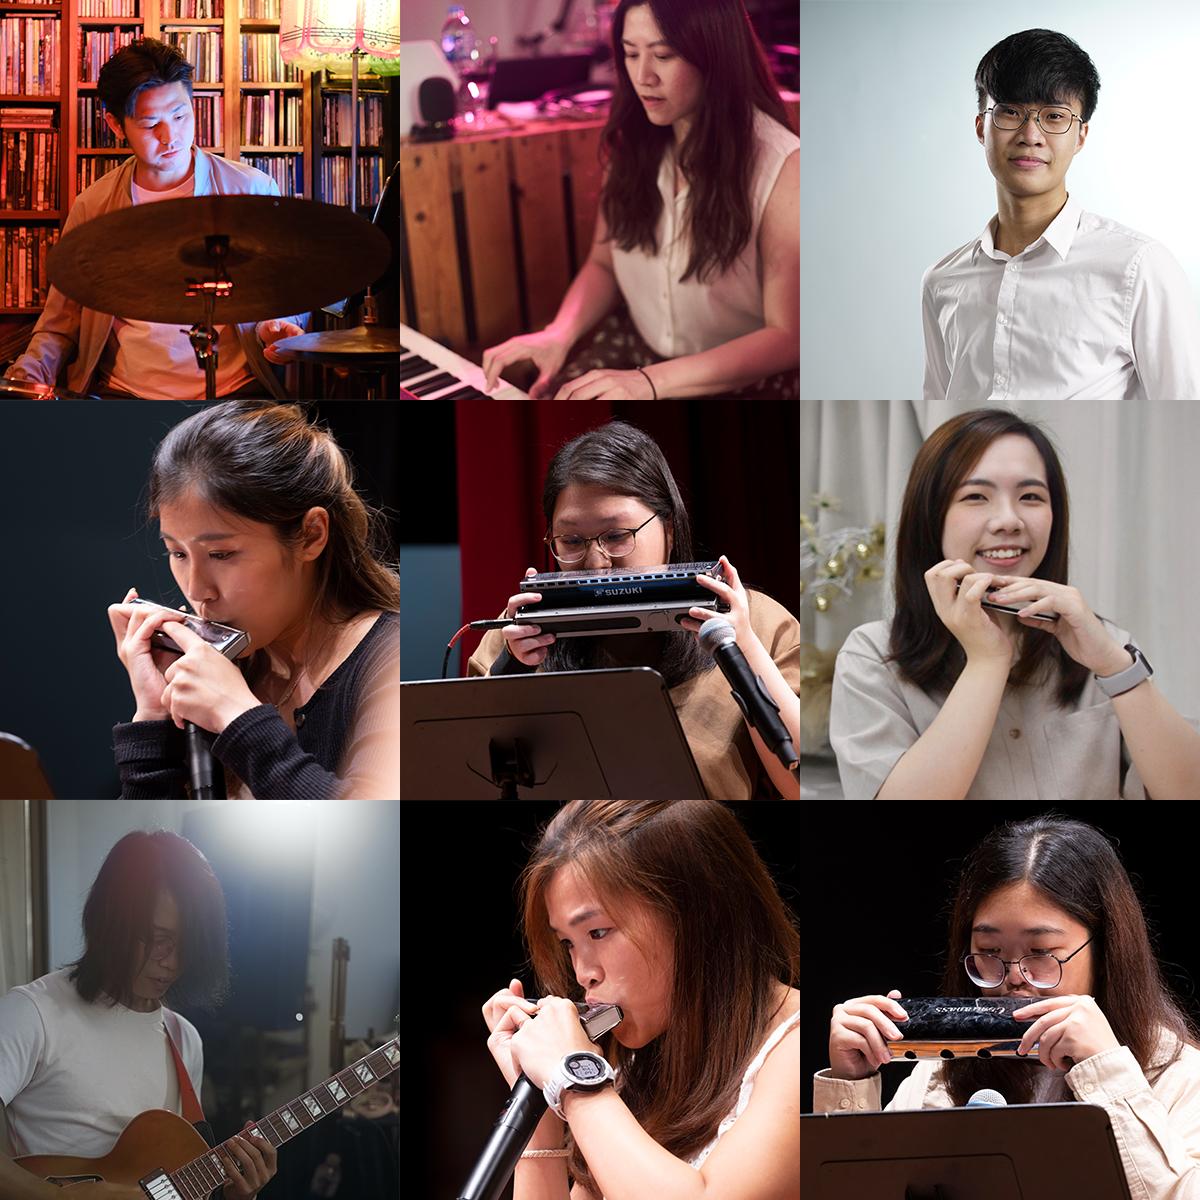 「香港周2023@曼谷」将于十月二十一日至十一月十二日在泰国曼谷举行，口琴乐队Respire Harmonica Ensemble and Friends将带来流行音乐表演《Pop Beat by Respire and Friends》。